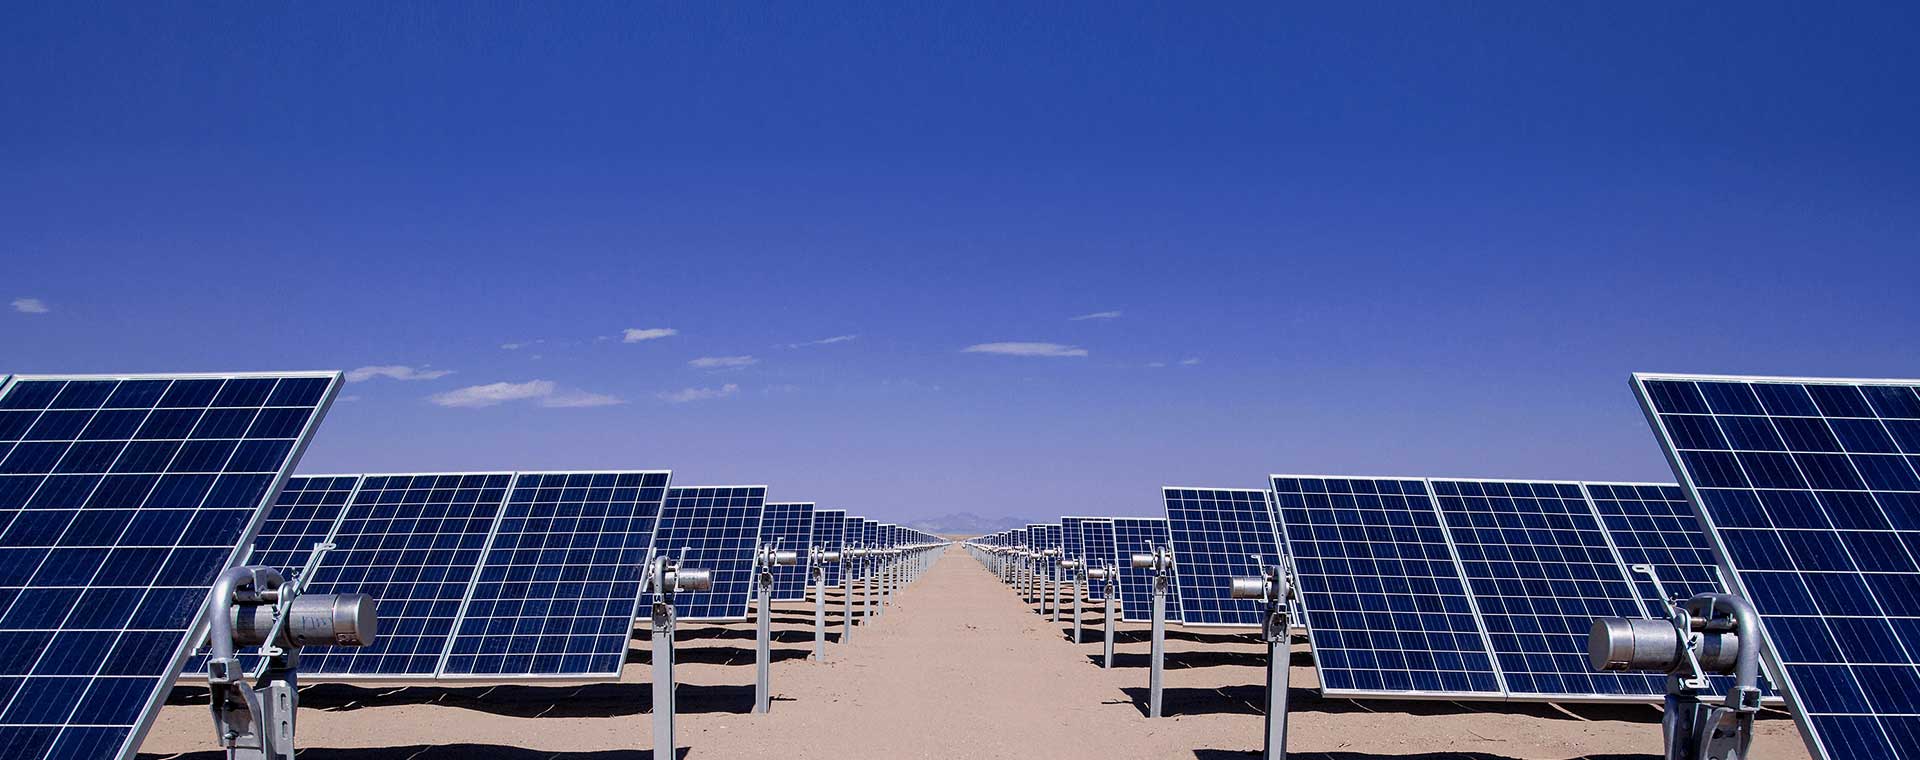 全球太阳能项目总计超50GW